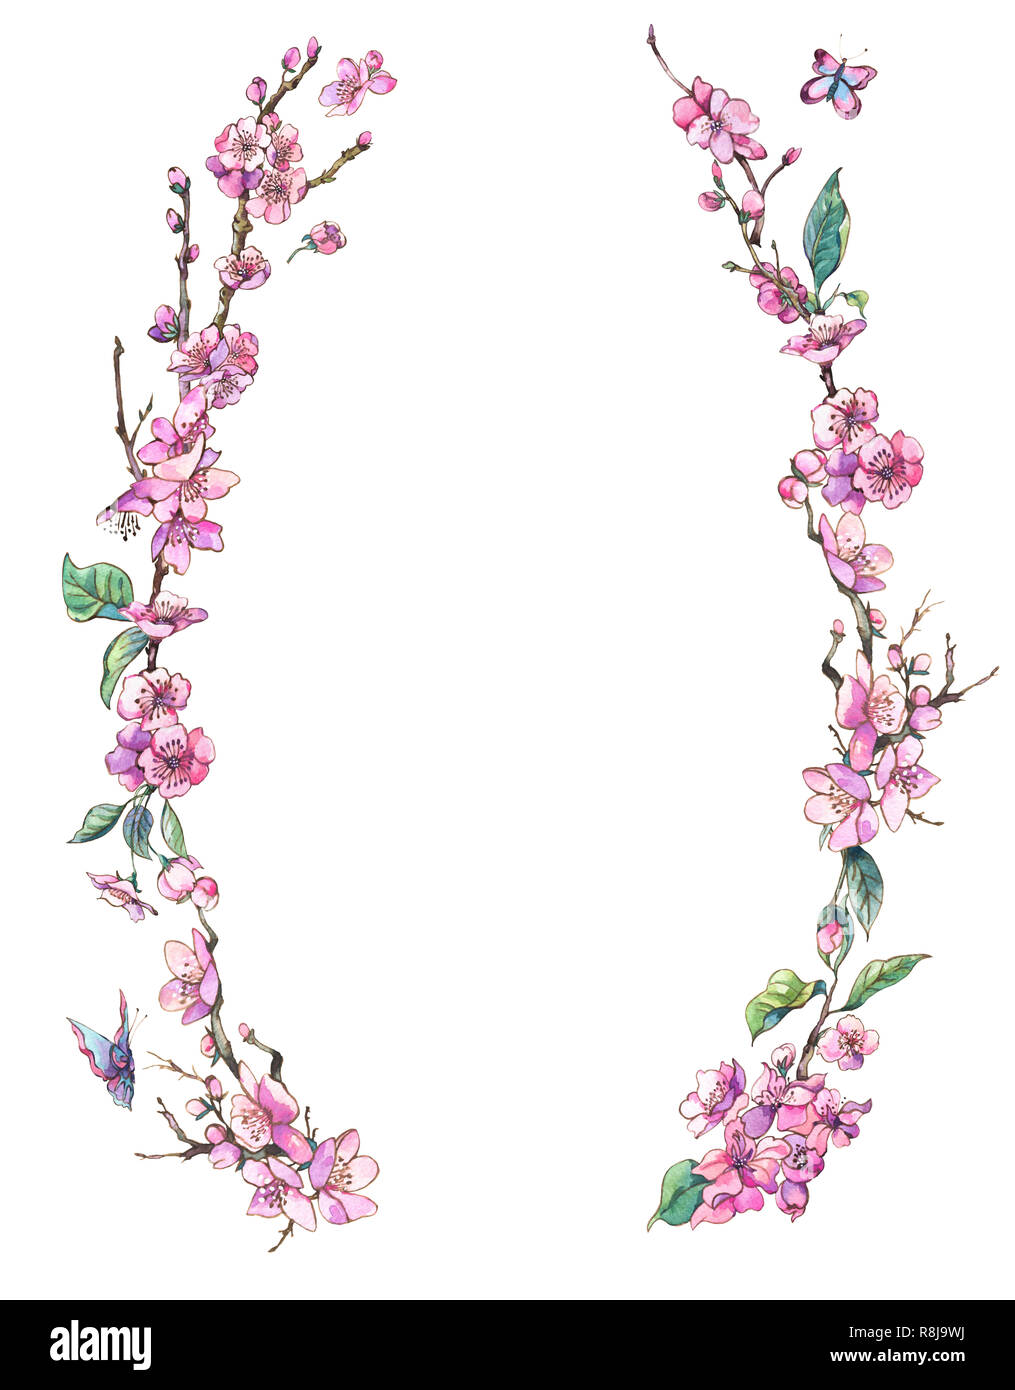 Printemps aquarelle carte de vœux, couronne de fleurs rose vintage avec branches en fleurs de cerisier sakura, pêche, poire, pomme arbres et fleurs, papillons Banque D'Images